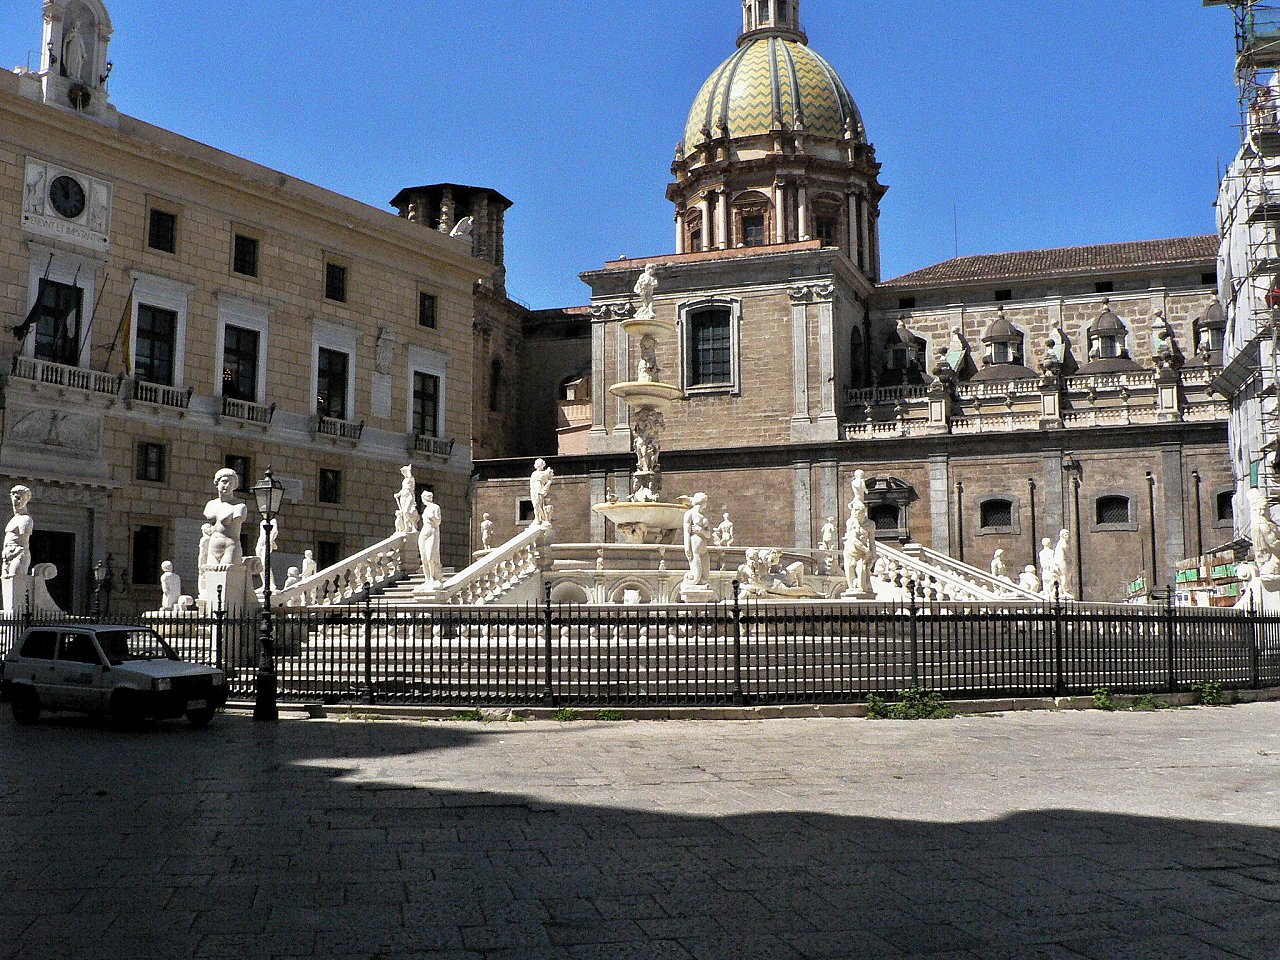 Piazza Pretoria, Palermo, Italy